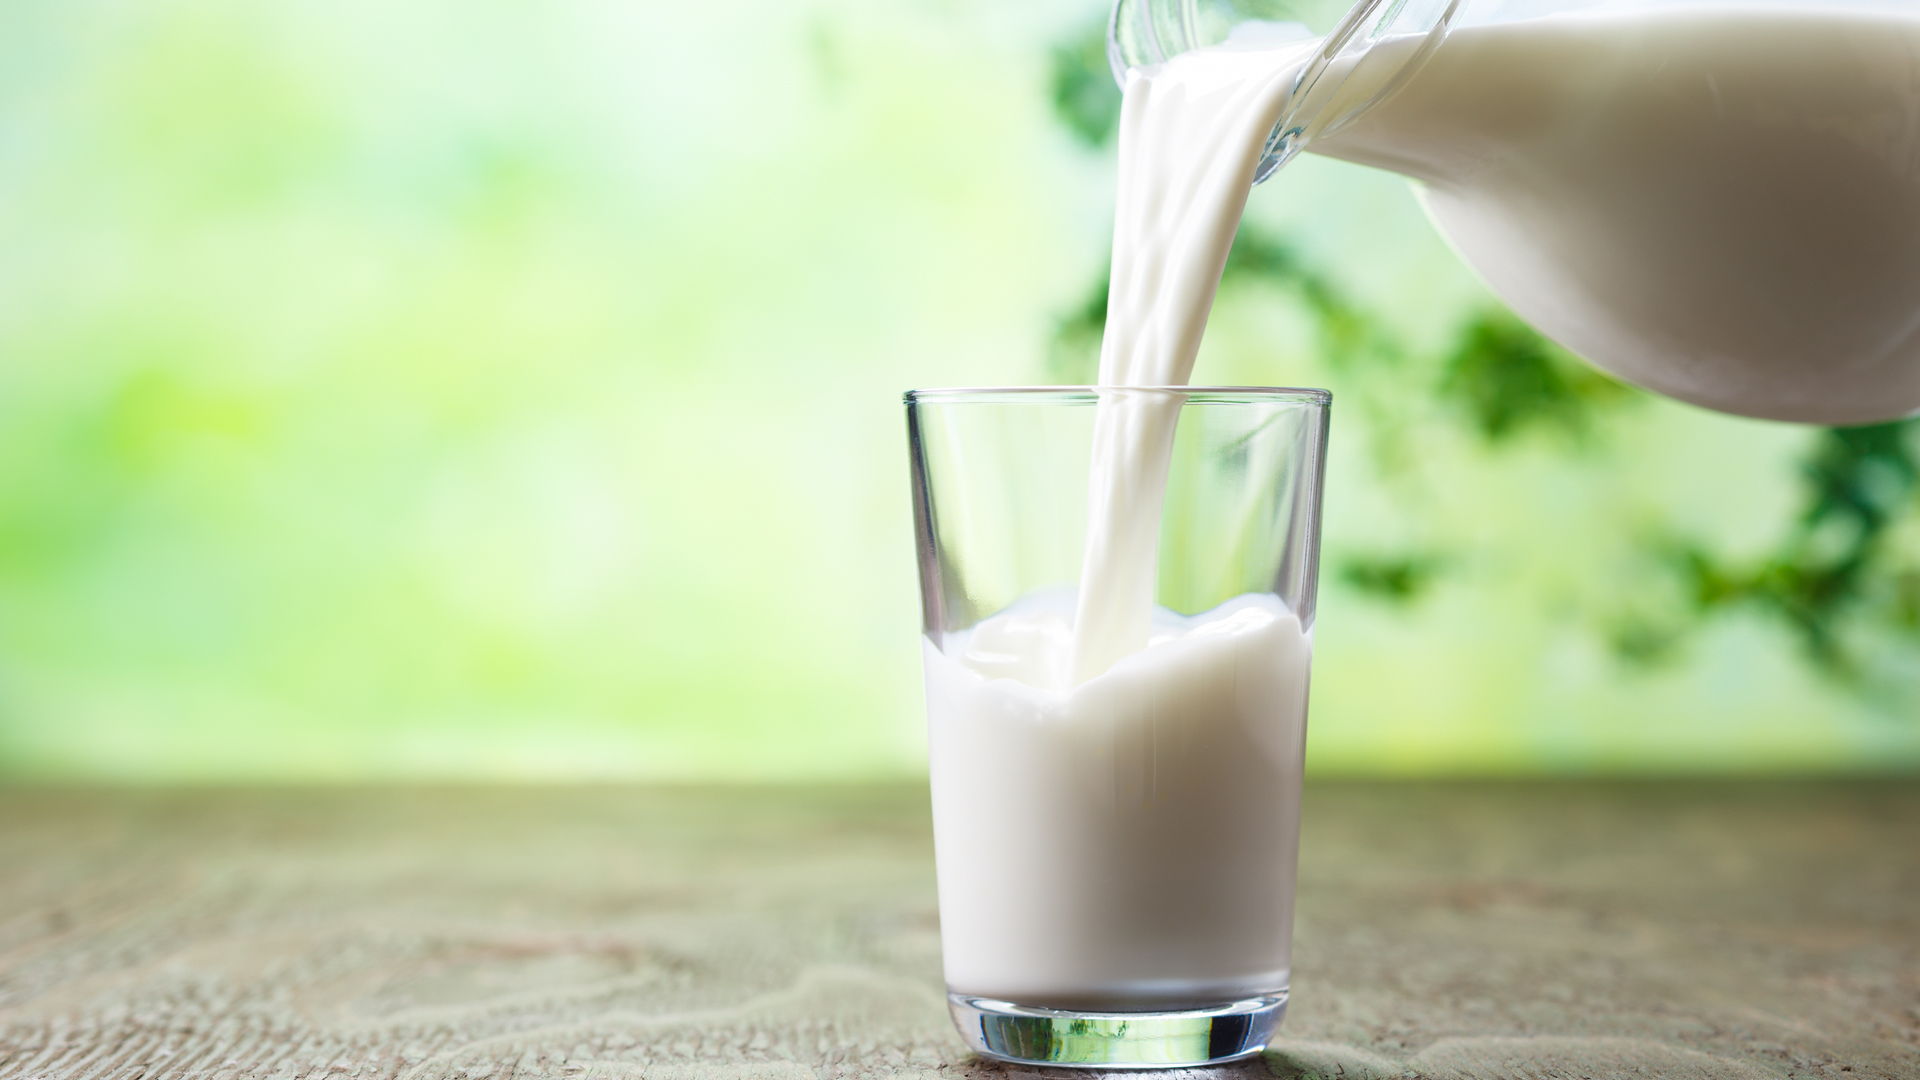 La leche es uno de los alimentos más completos, pero la ciencia avanza hacia mejoras que permitan optimizarla aún más
(iStock)